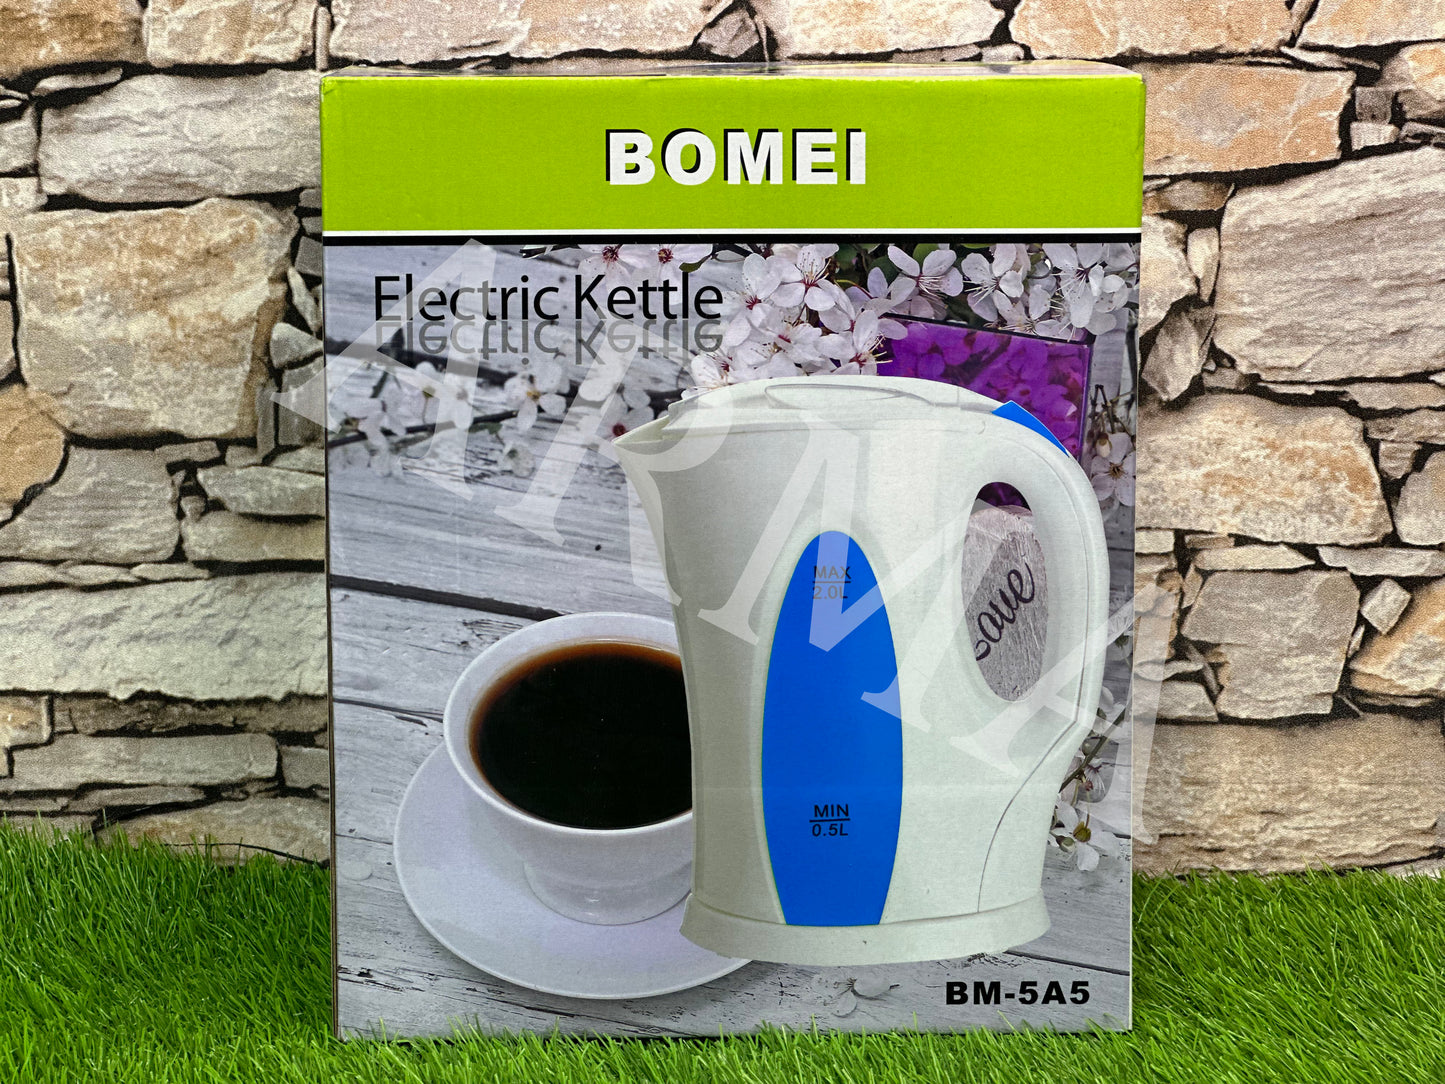 Bomie Deluxe Kettle | Electric Kettle